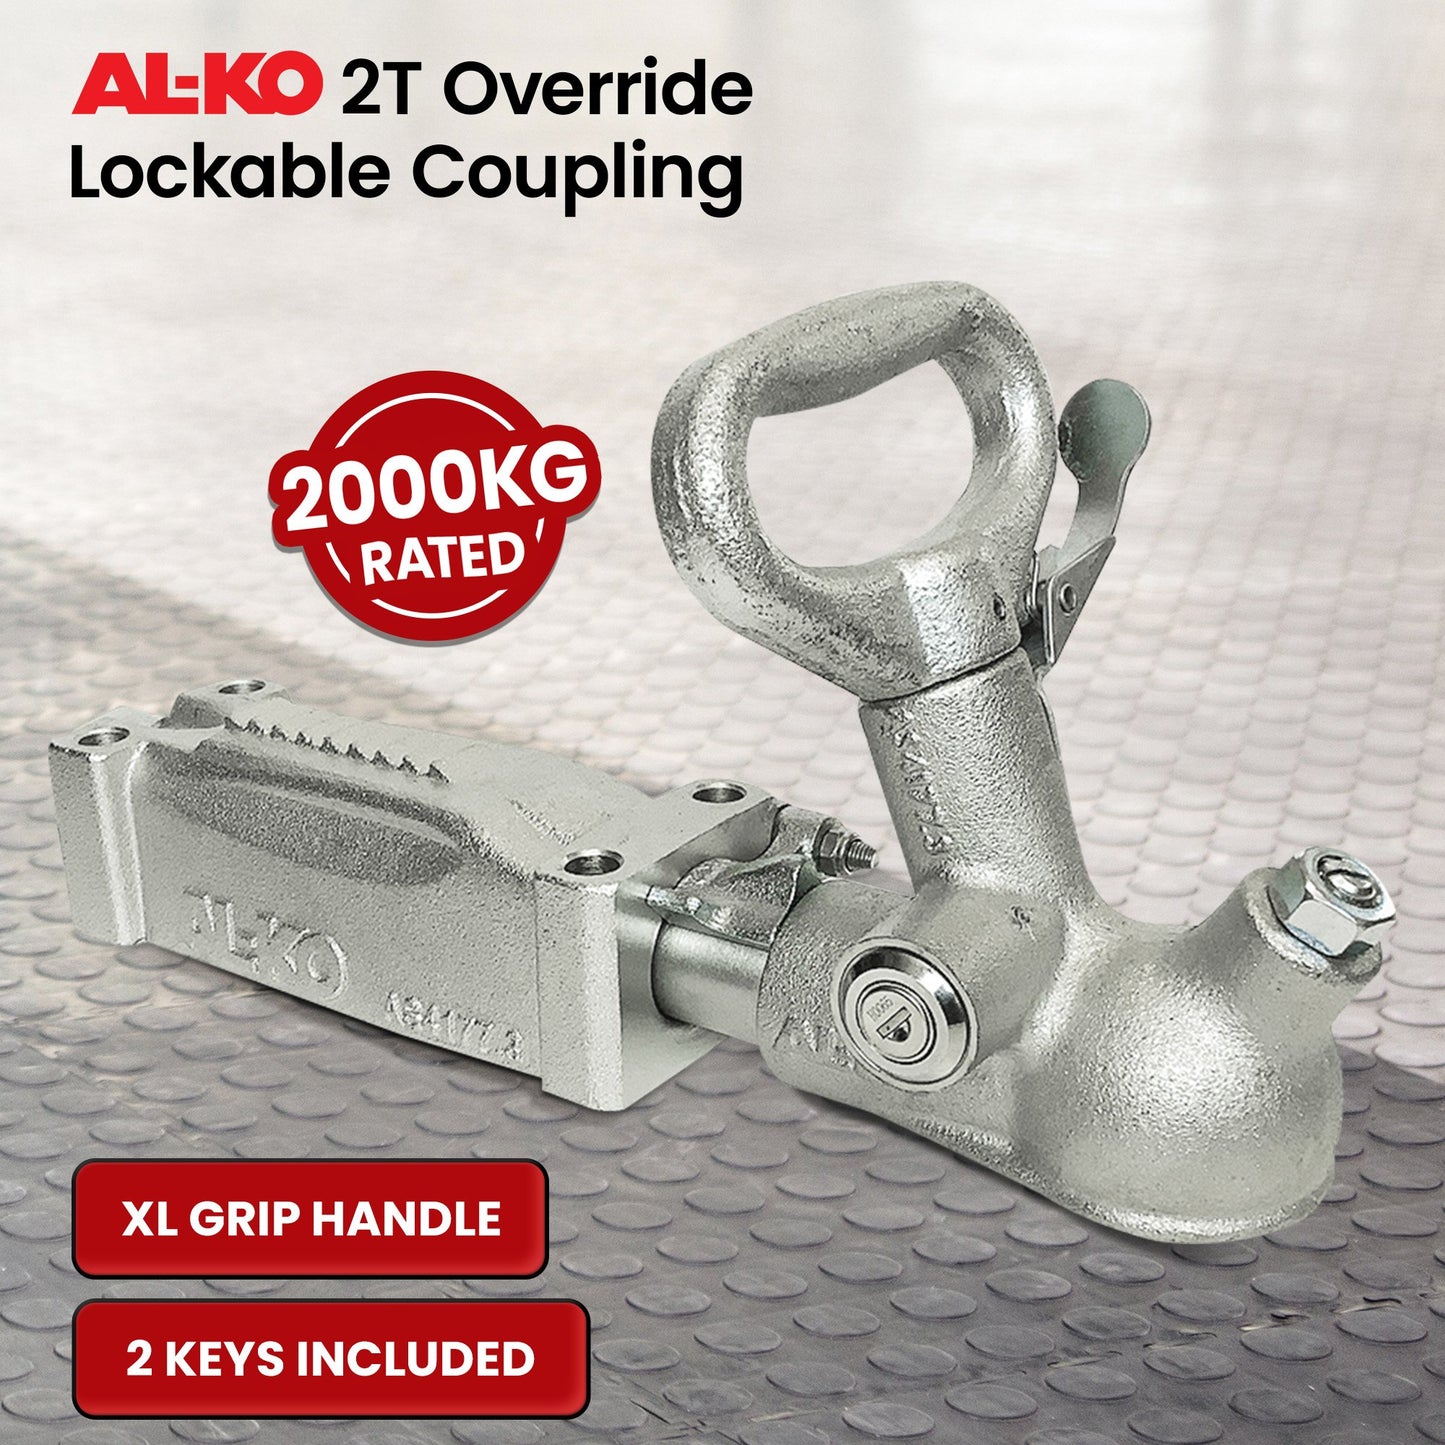 AL-KO Lockable Coupling - 2T Override 614054LPL